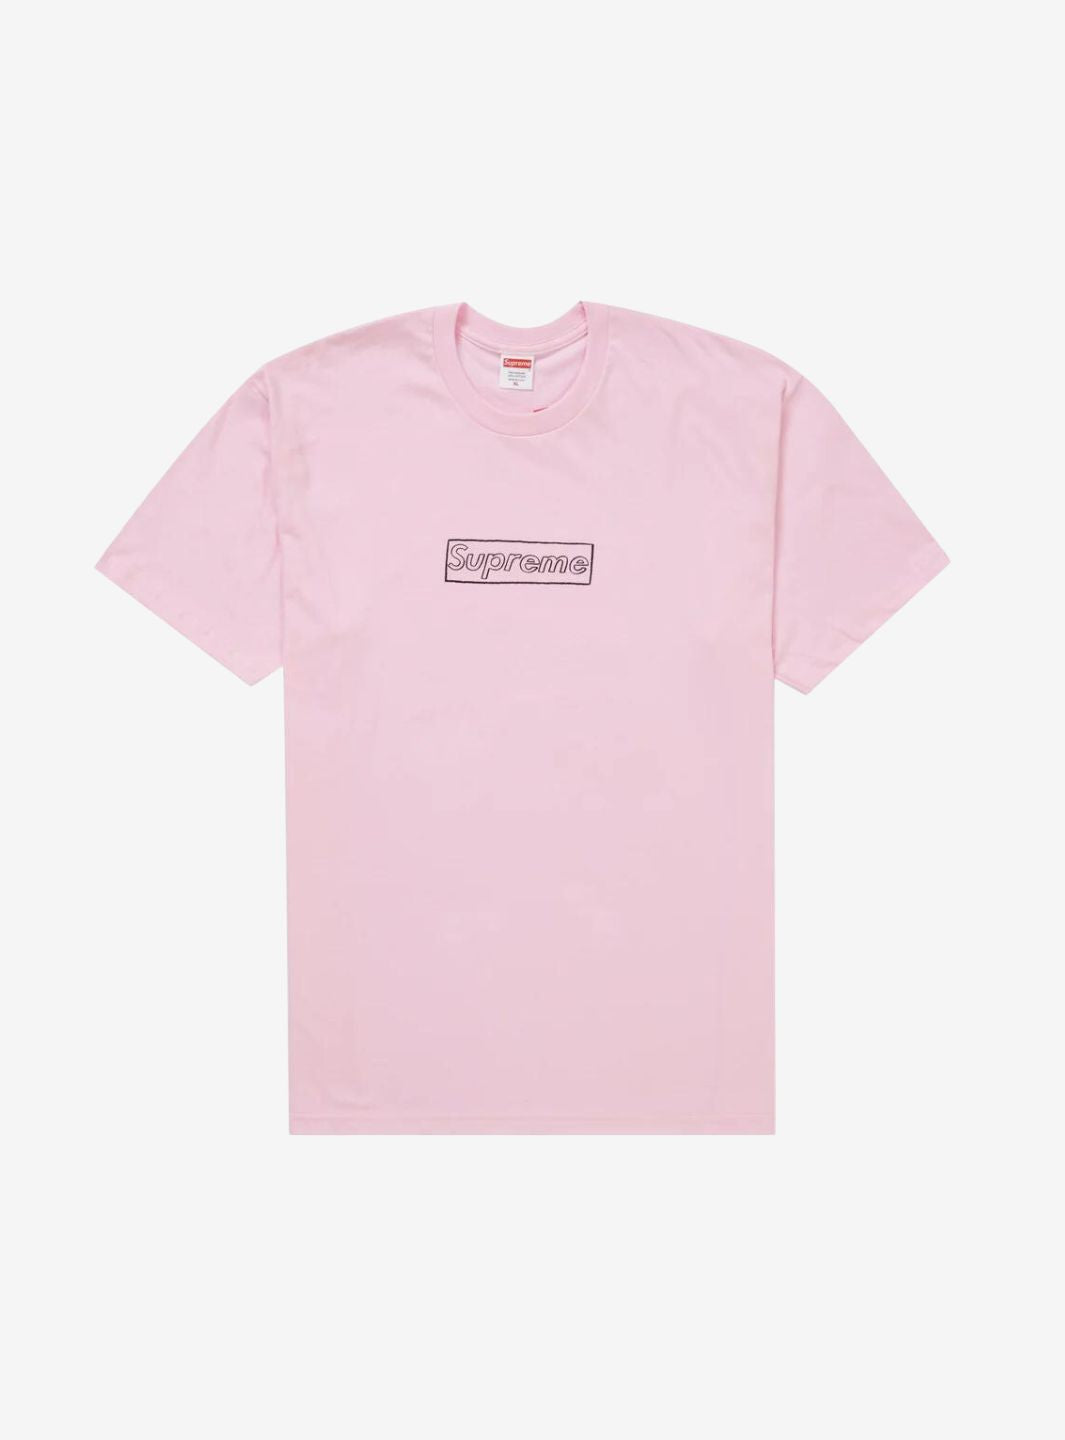 Supreme T-Shirt Box Logo Kaws Pink